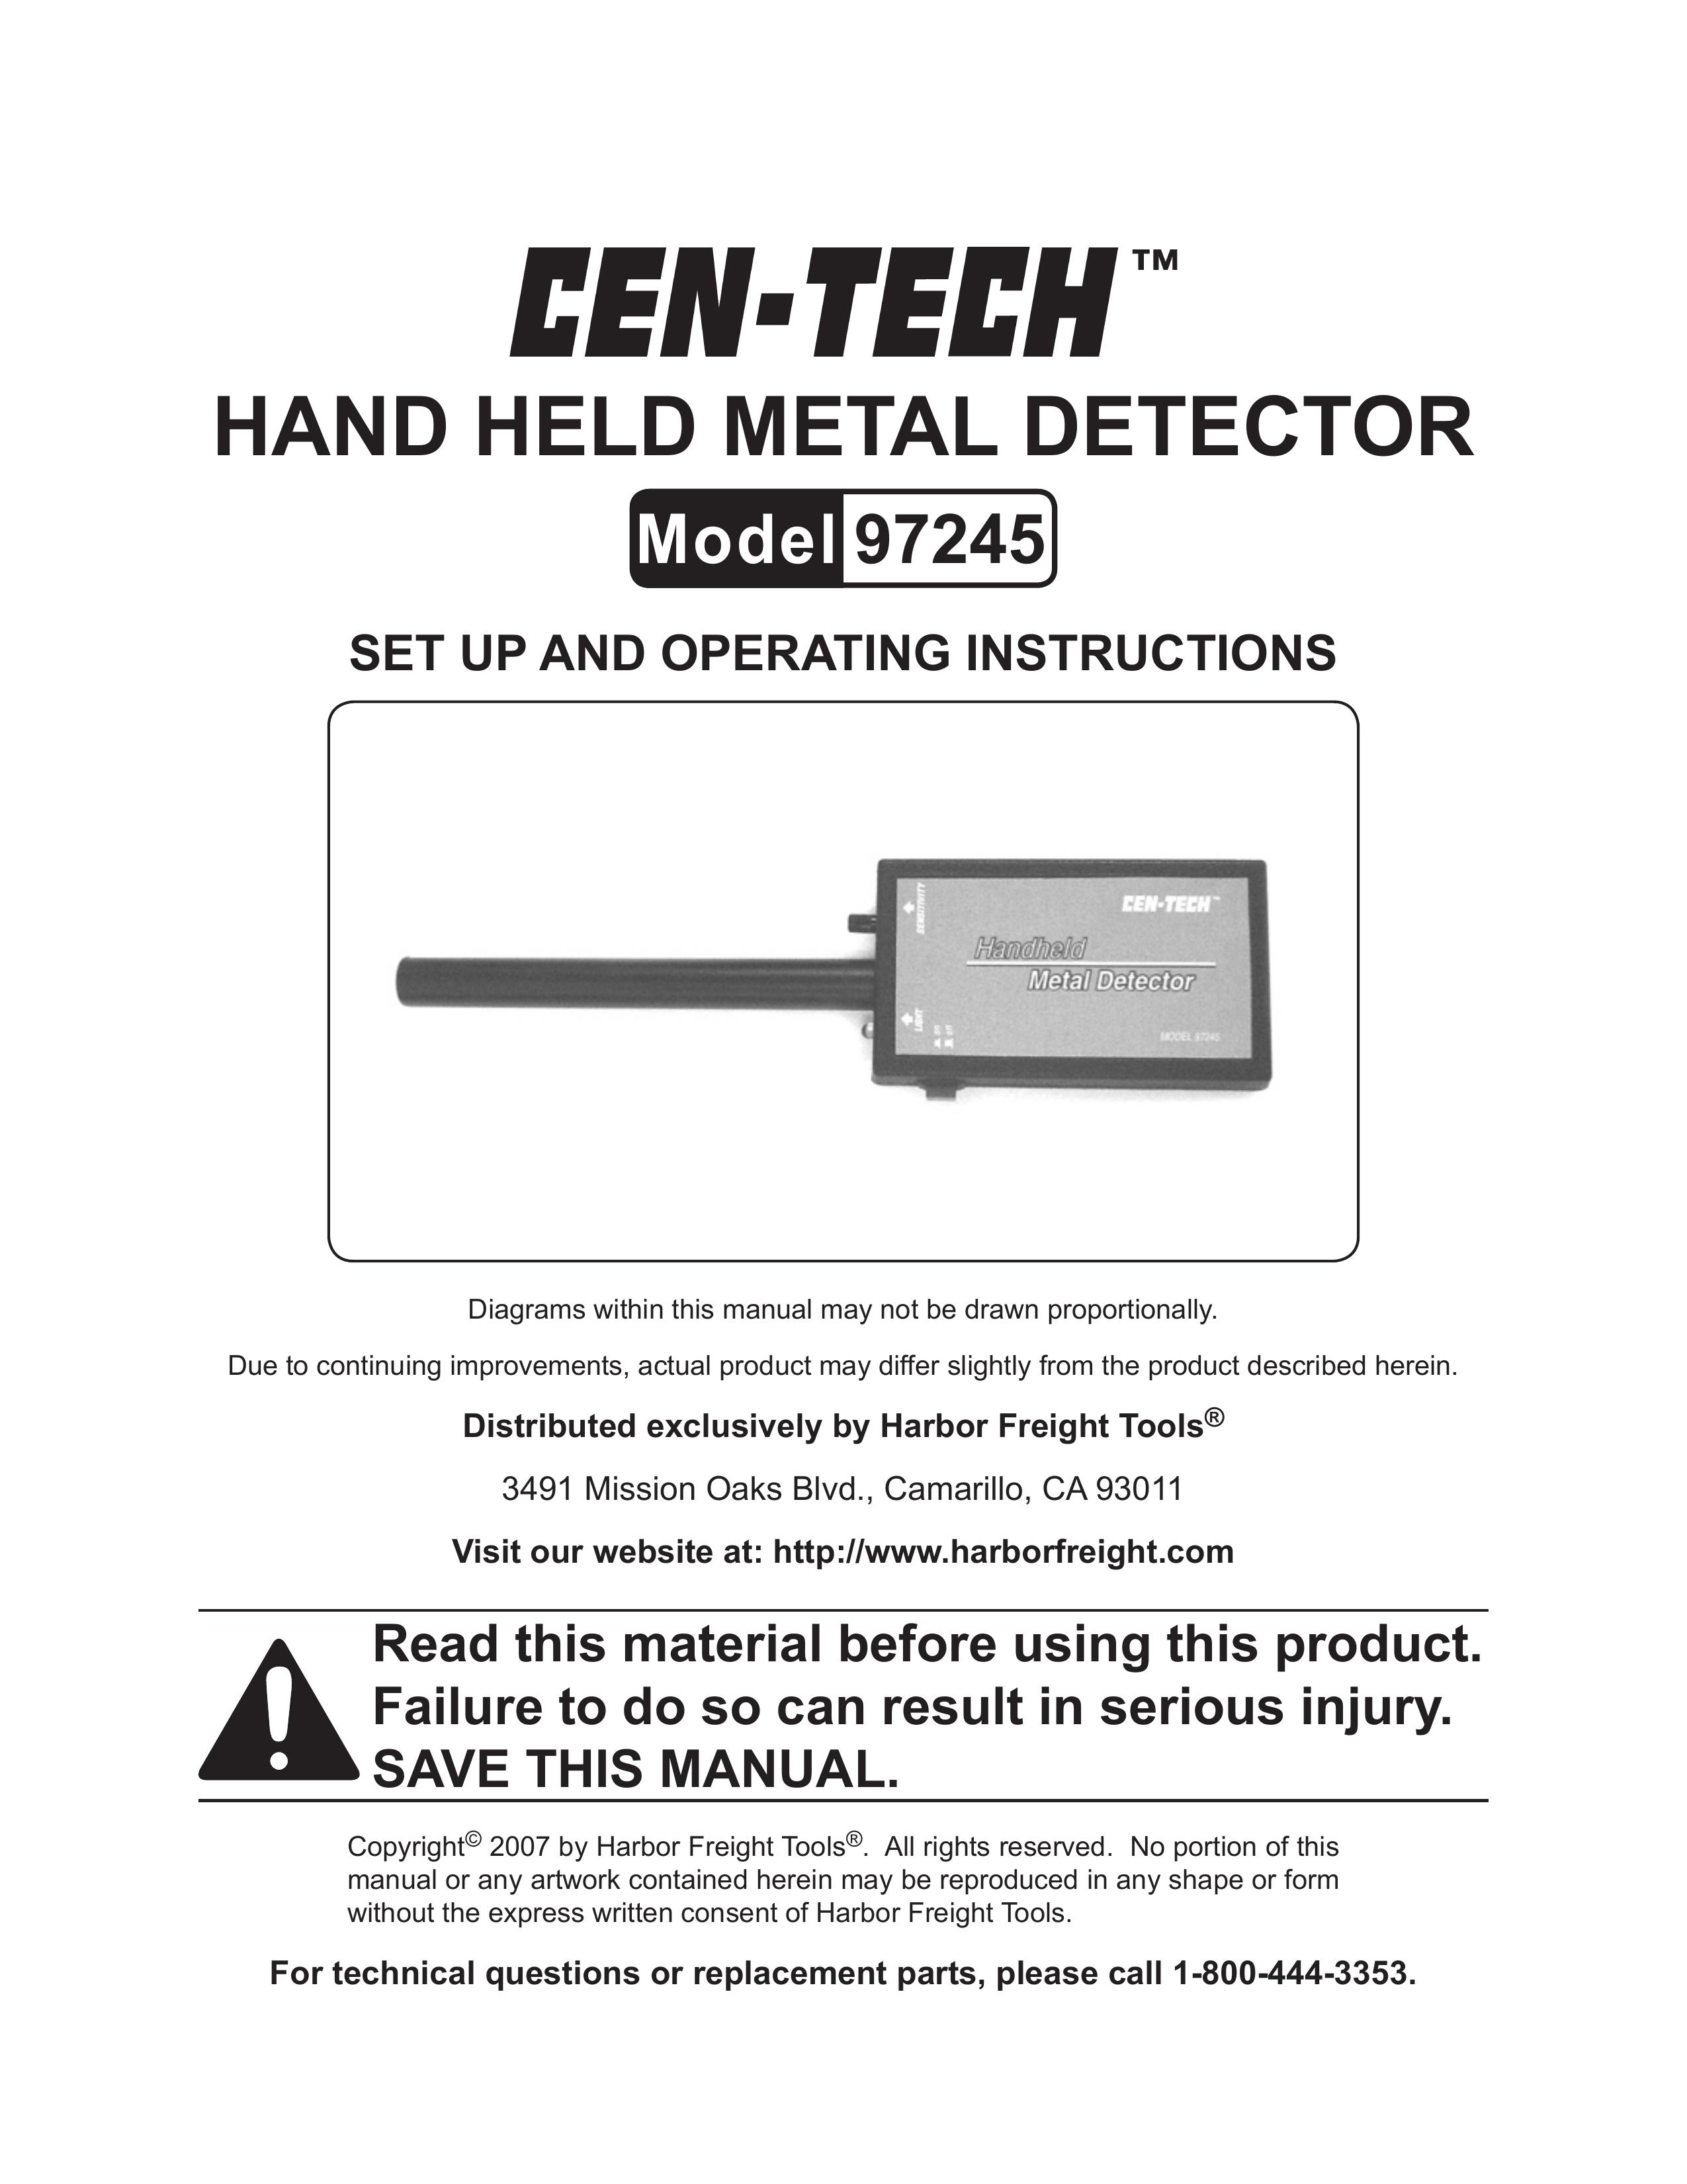 Harbor Freight Tools 97245 Metal Detector User Manual